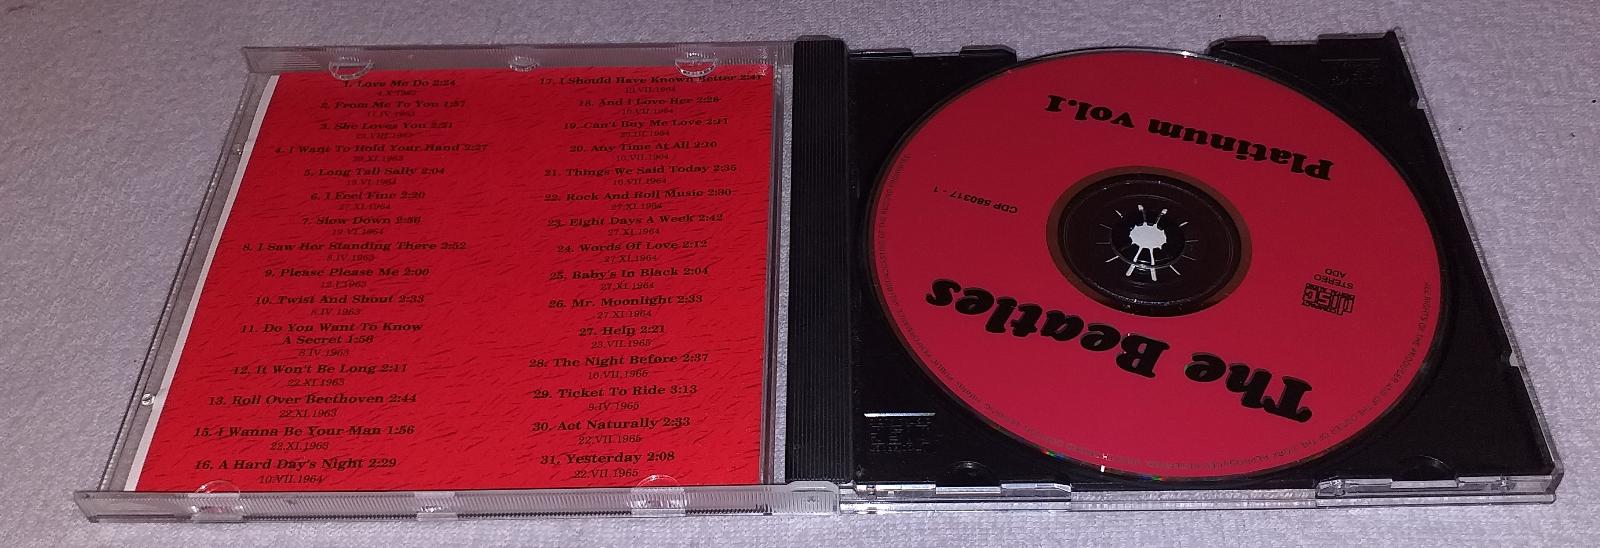 2 x CD The Beatles - Platinum Volume I, II - Hudba na CD